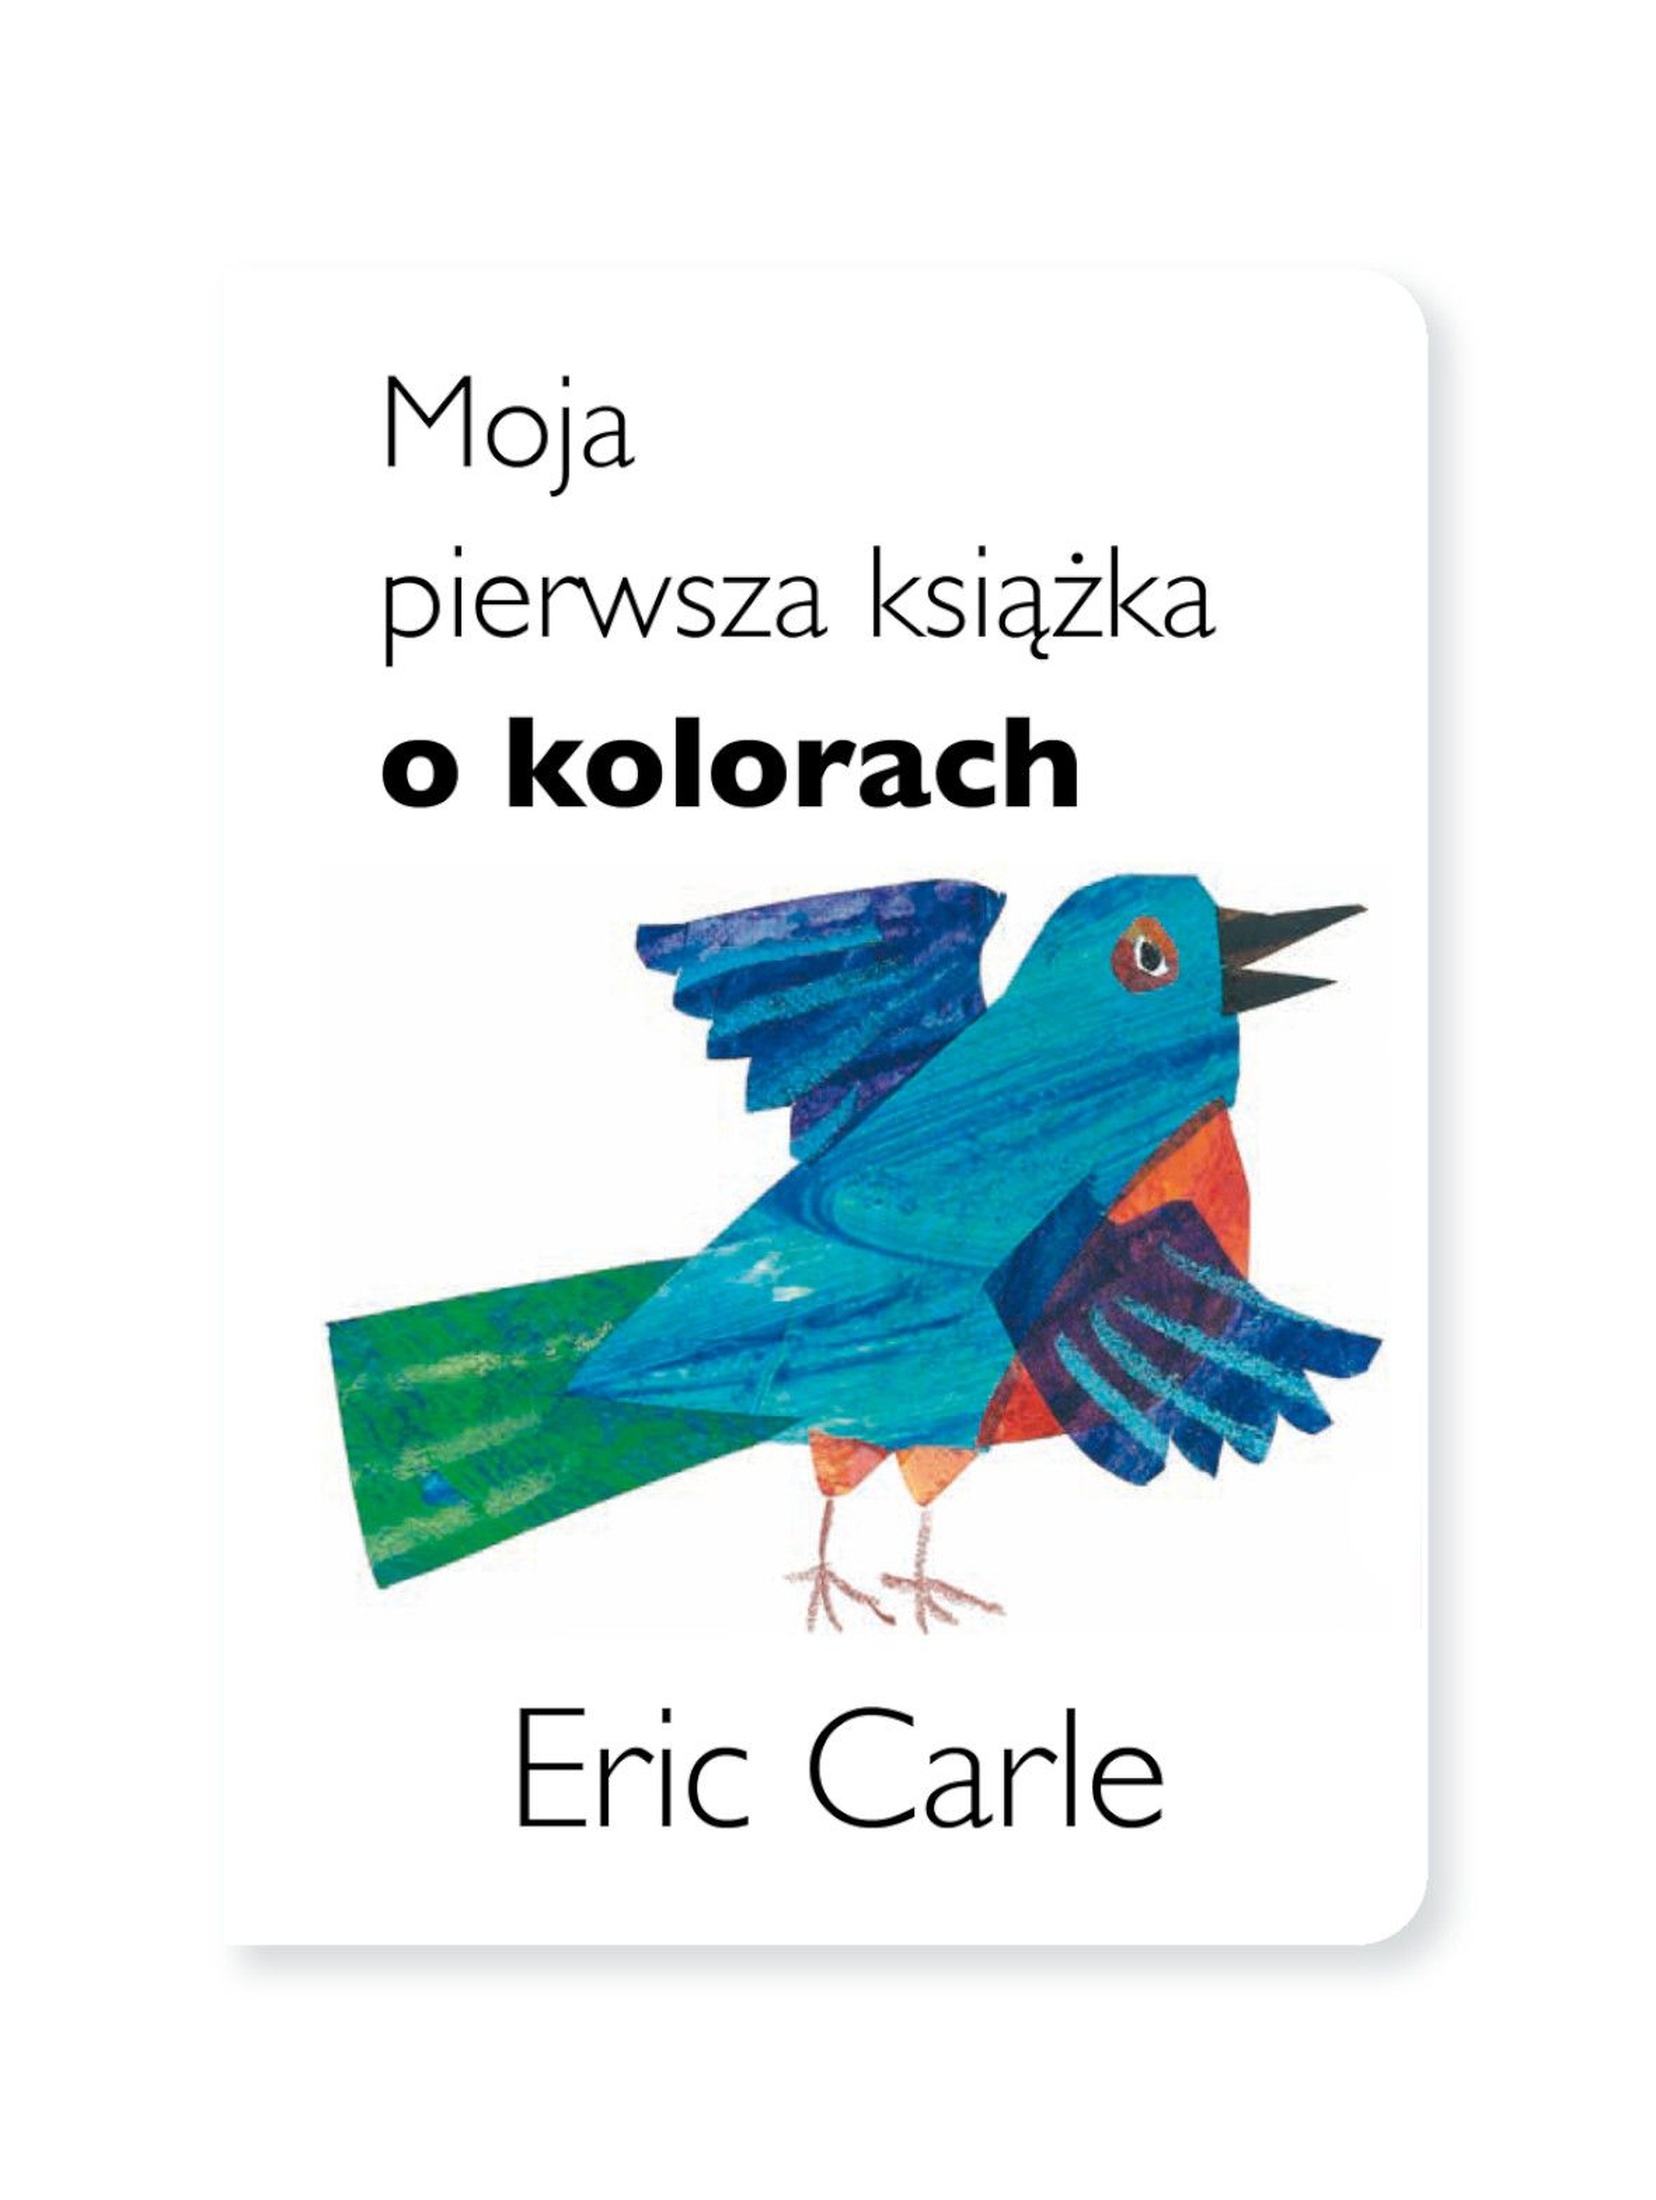 Moja pierwsza książka o kolorach  Eric Carle - książka